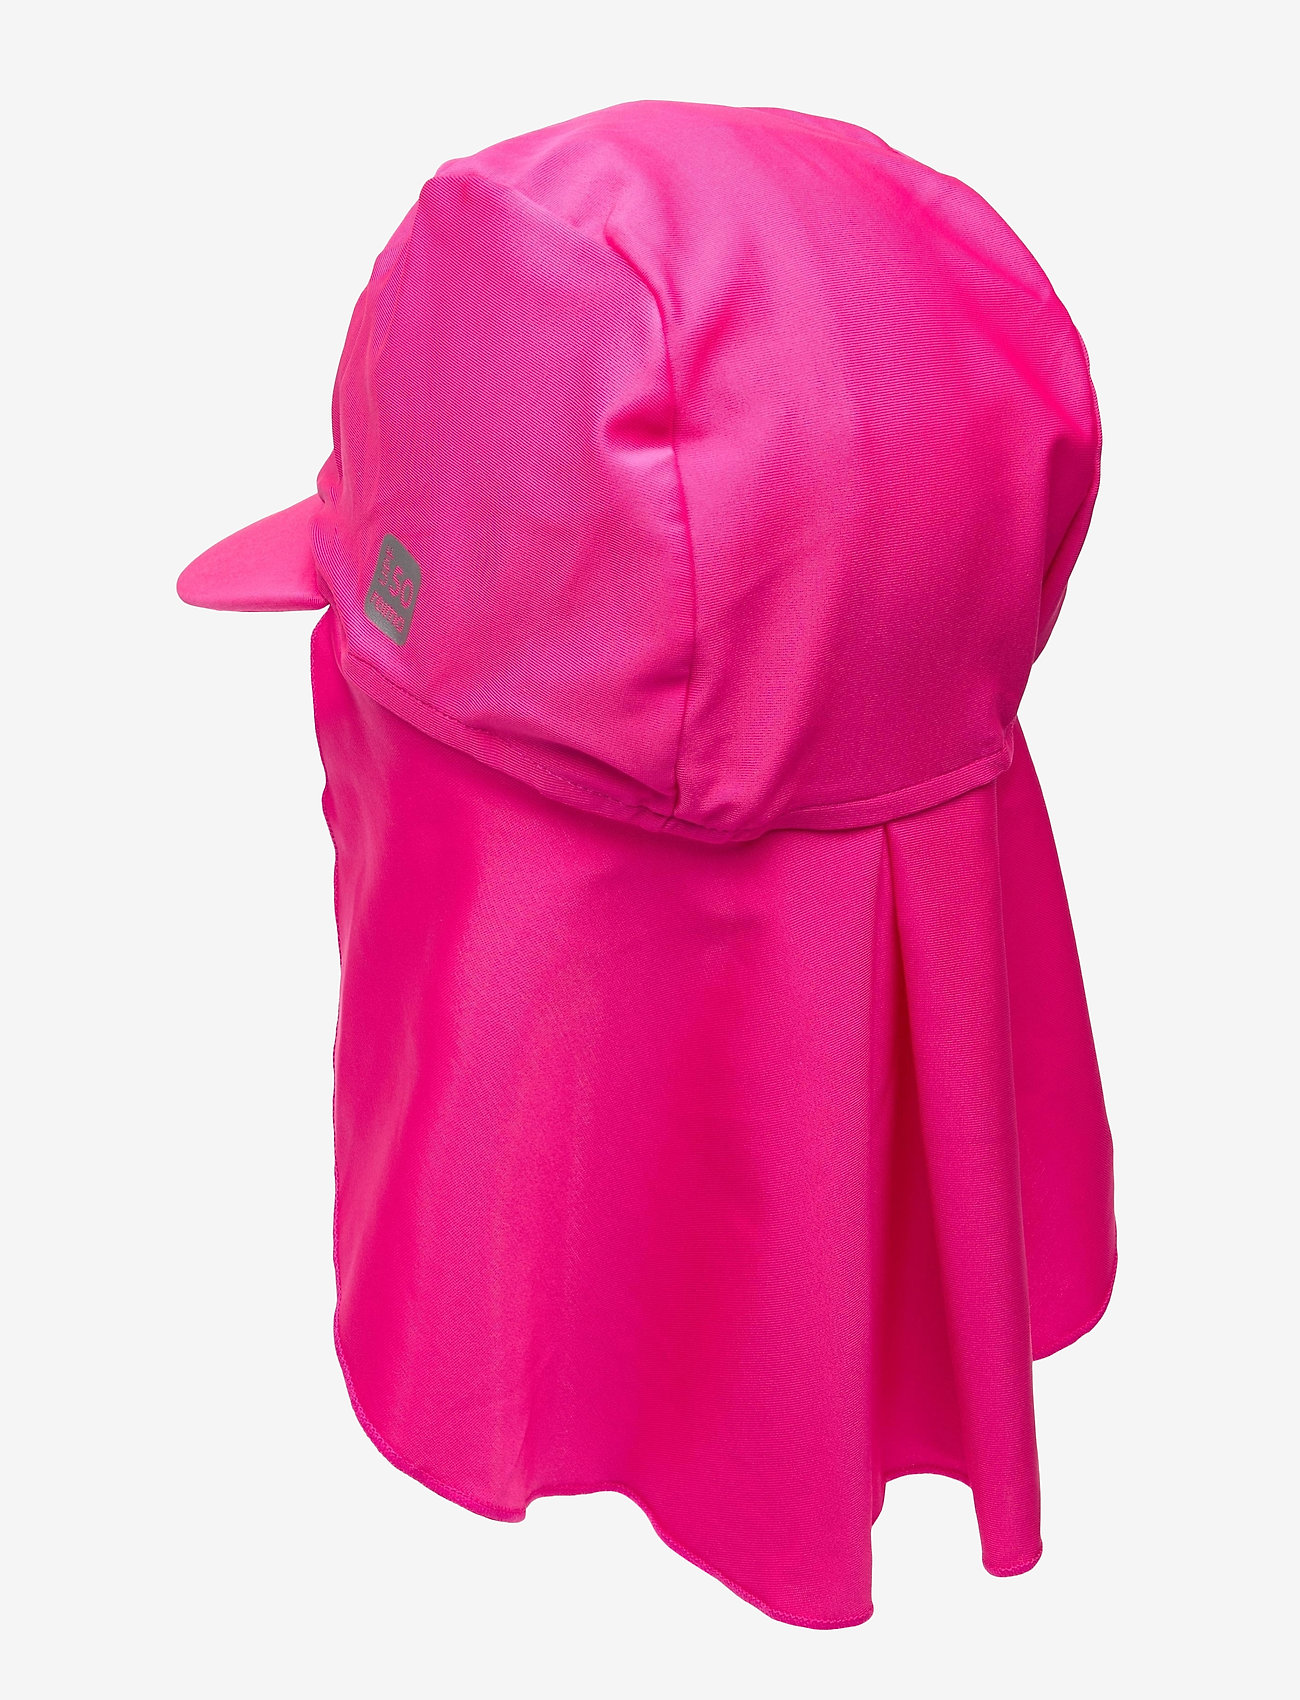 Reima - Mustekala - swim hats - fuchsia pink - 1